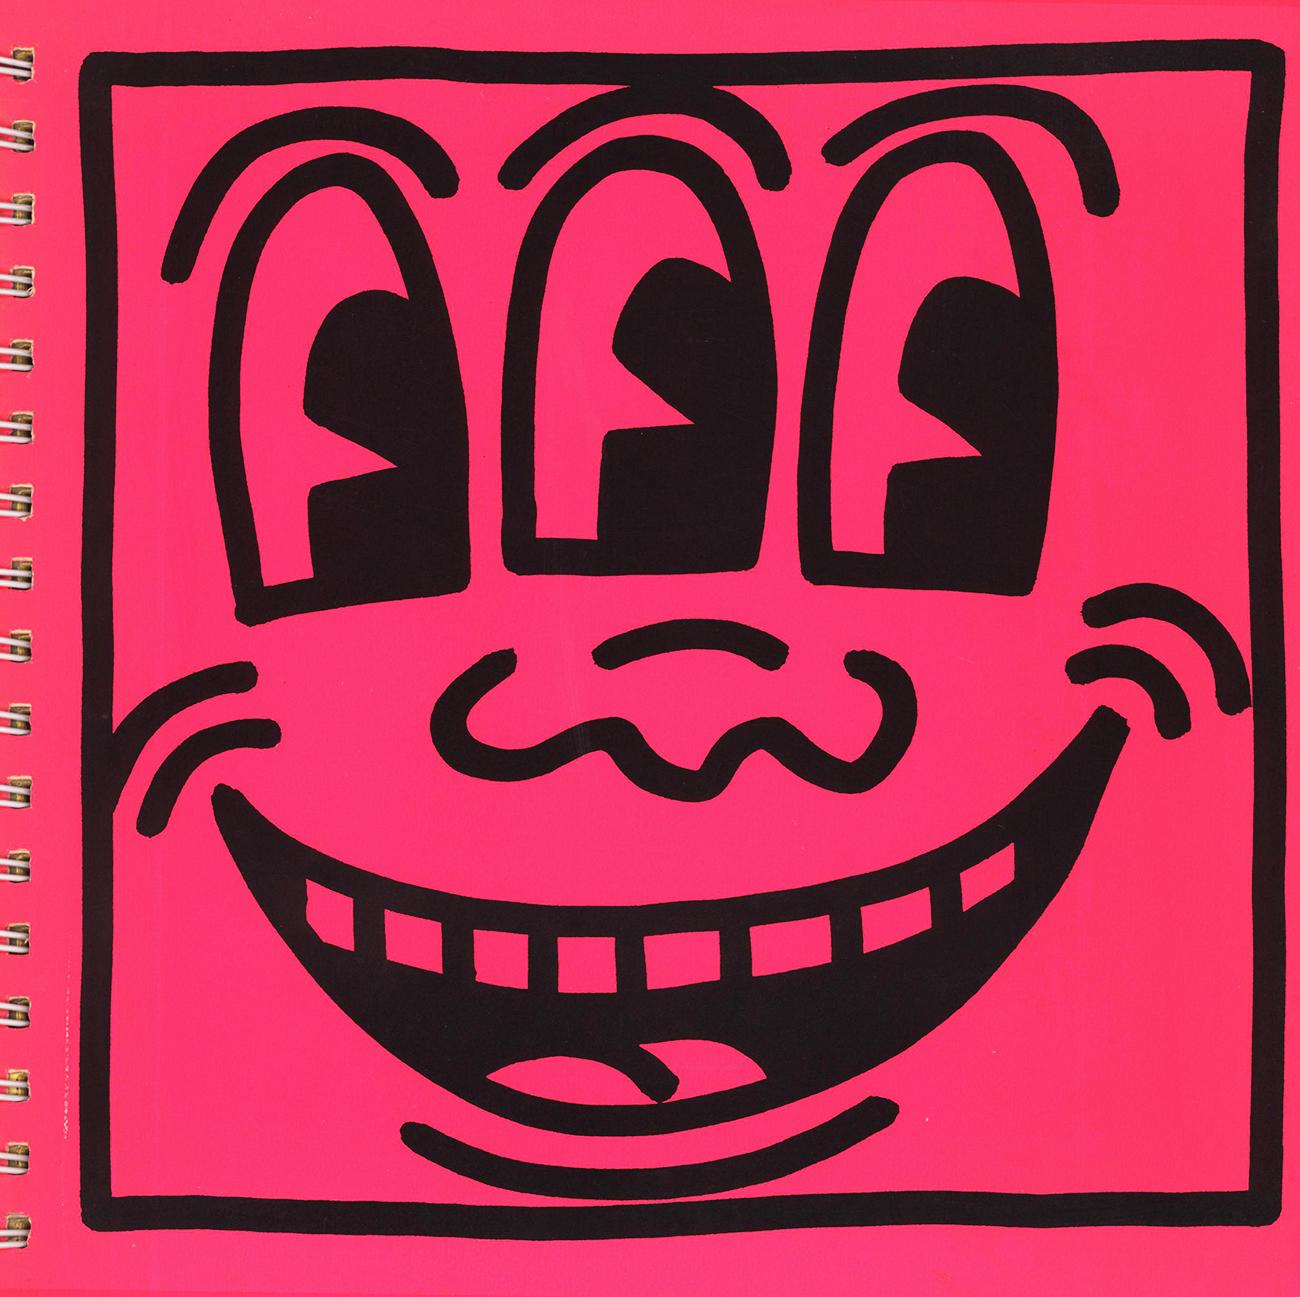 Keith Haring 1982 1. Auflage (Keith Haring Tony Shafrazi Gallery):
Der bahnbrechende und sehr begehrte Katalog in limitierter Auflage mit dem ikonischen Neon Haring Three Eyed Smiling Face Cover und 15 begehrten doppelseitigen lithografischen